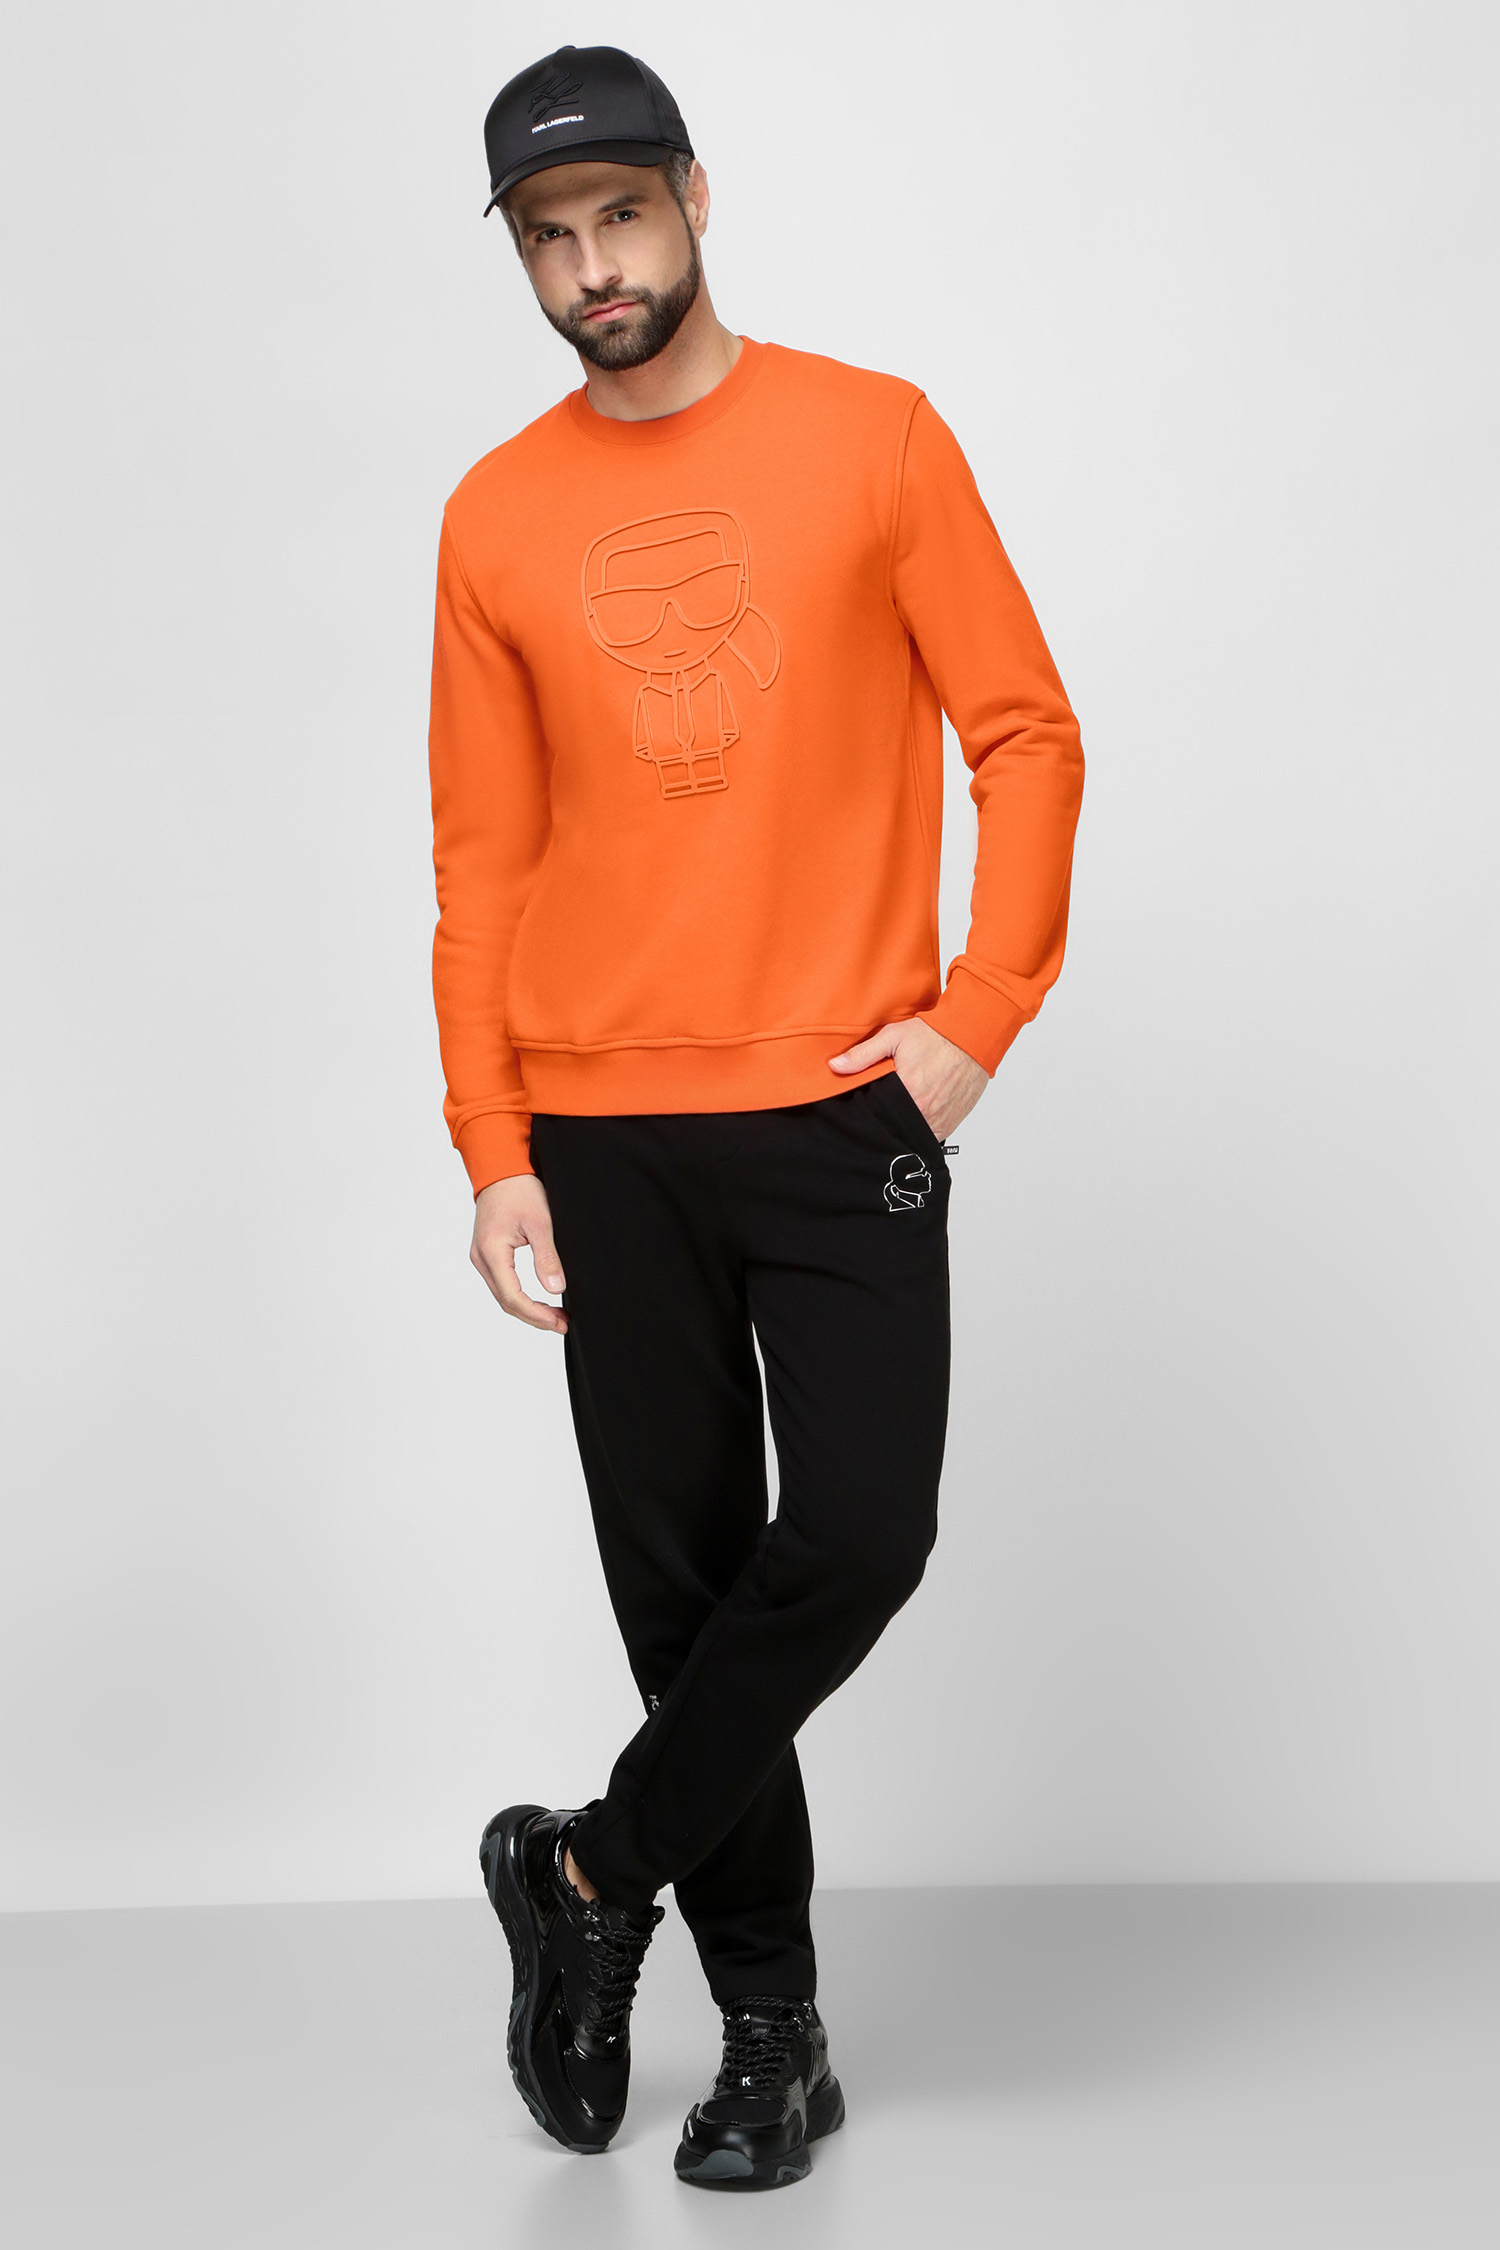 Мужской оранжевый свитшот Karl Lagerfeld 521900.705089;180